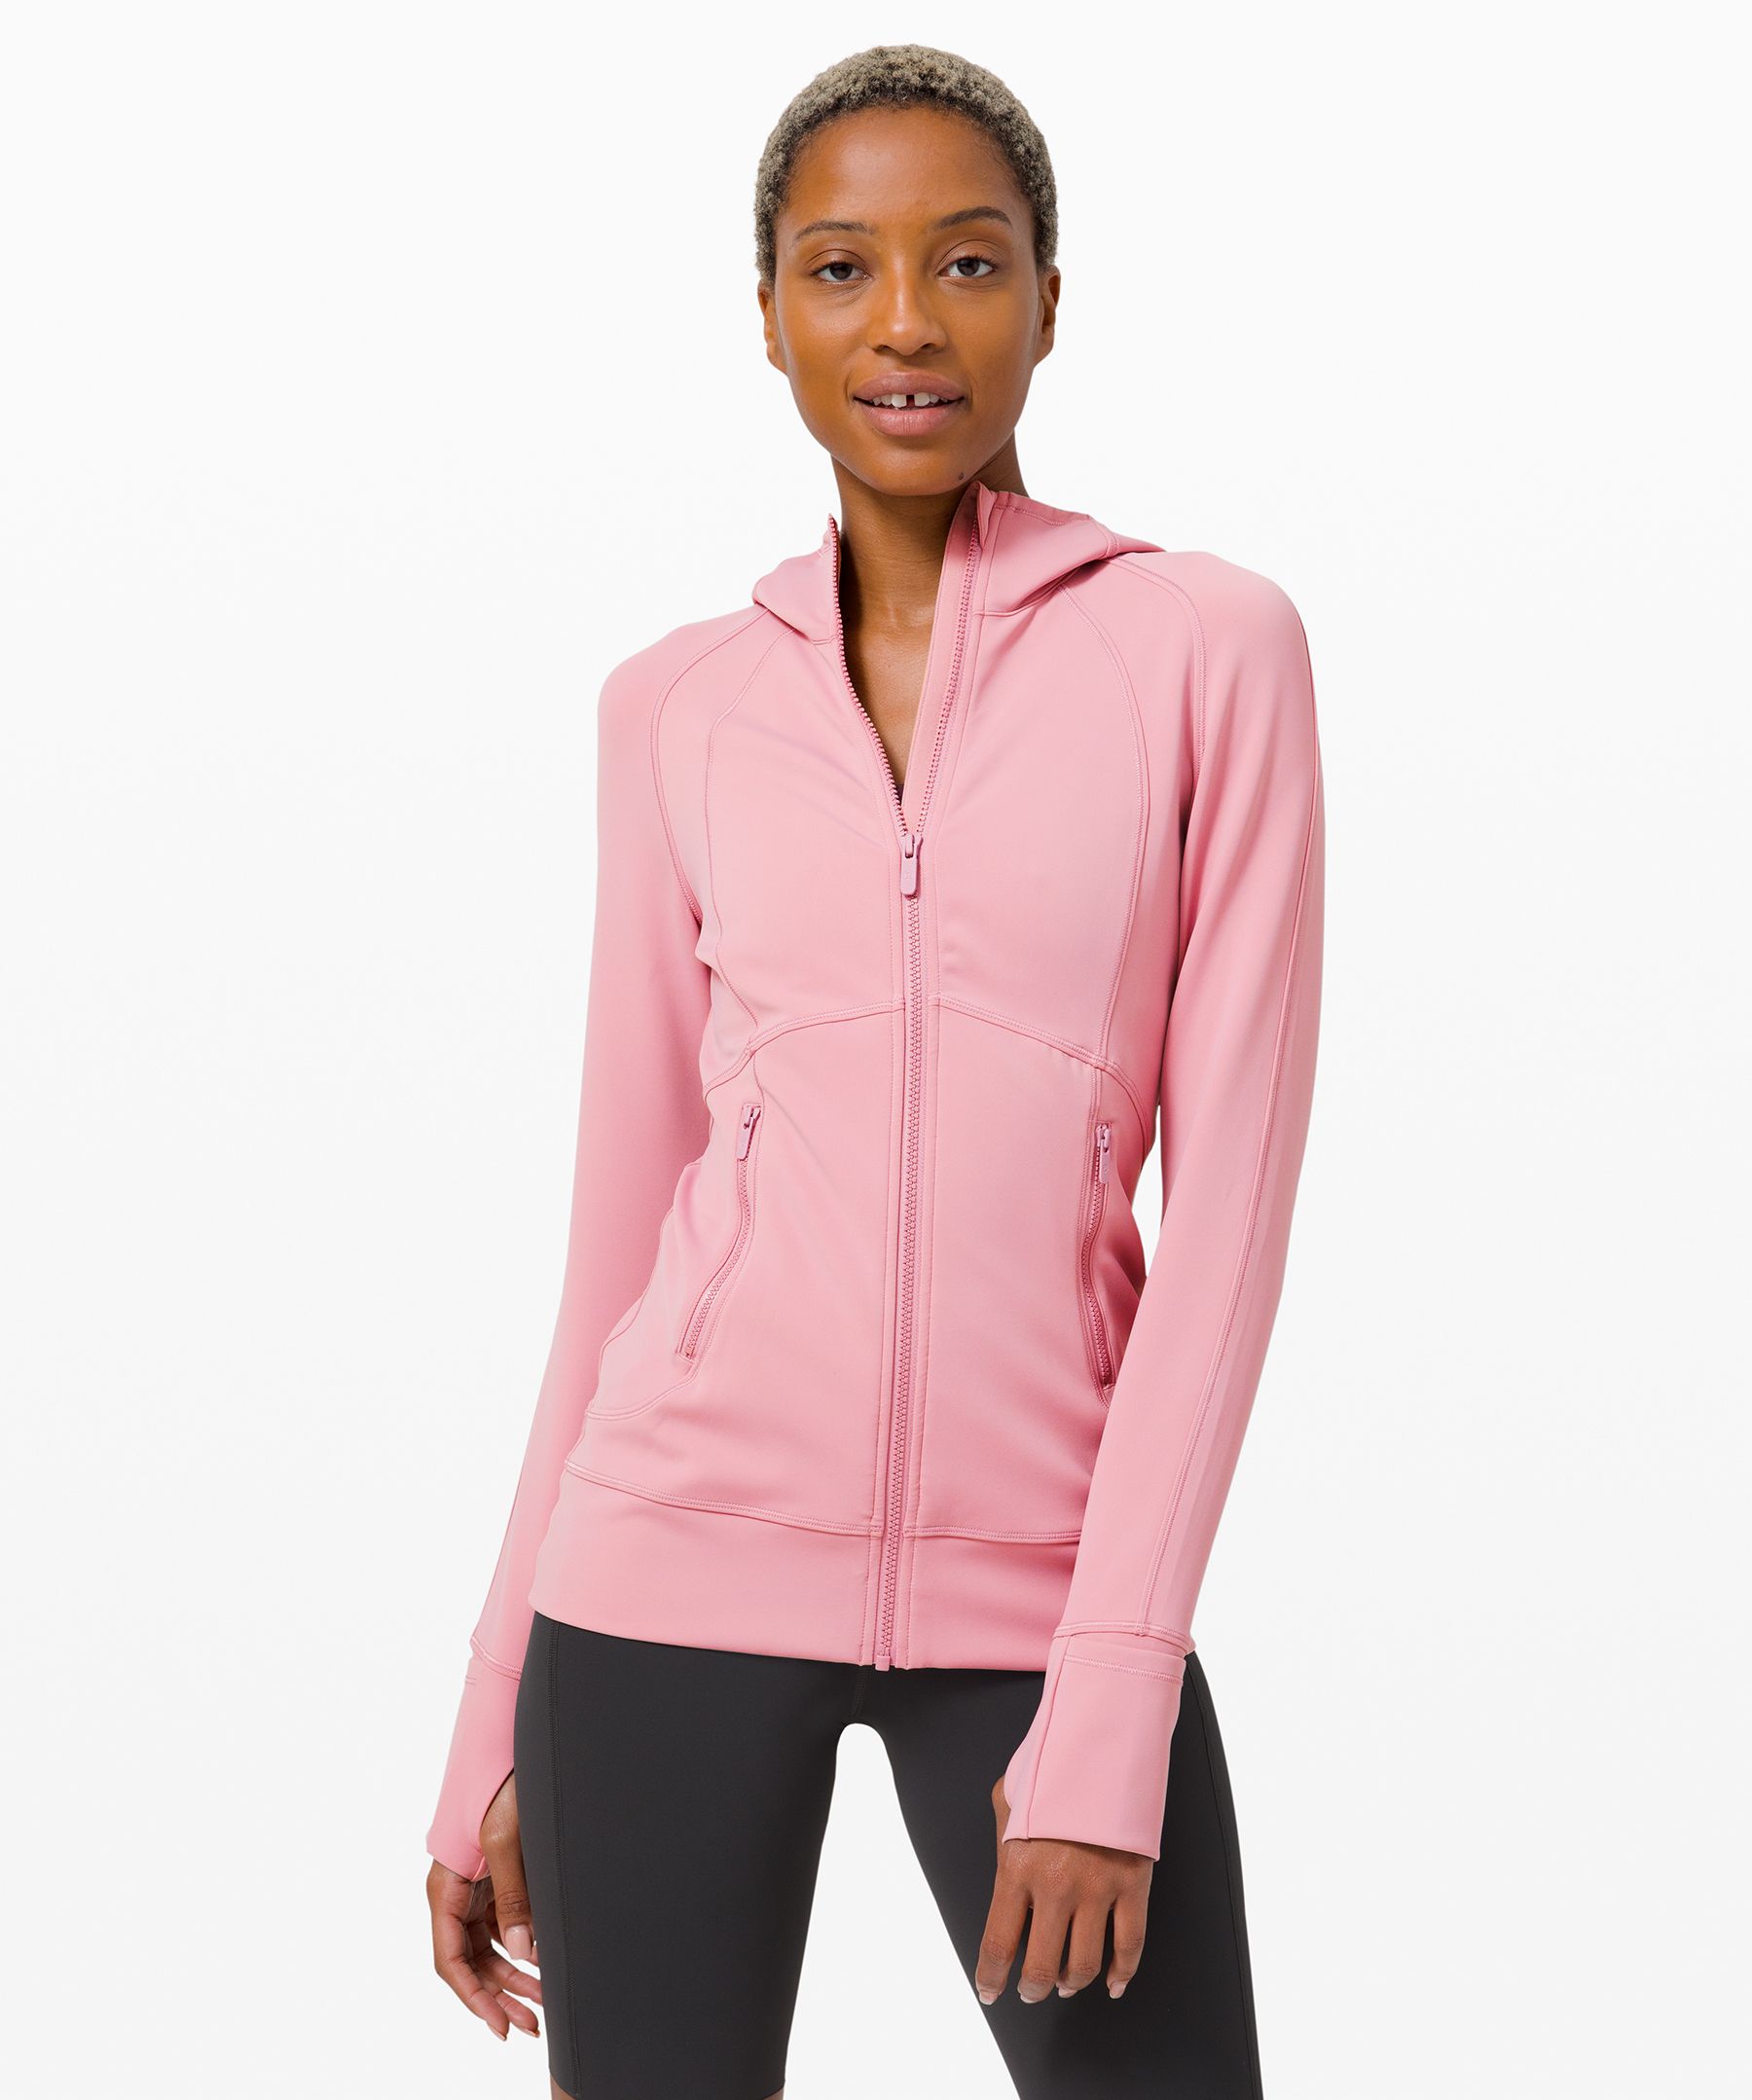 lululemon pink sweatshirt